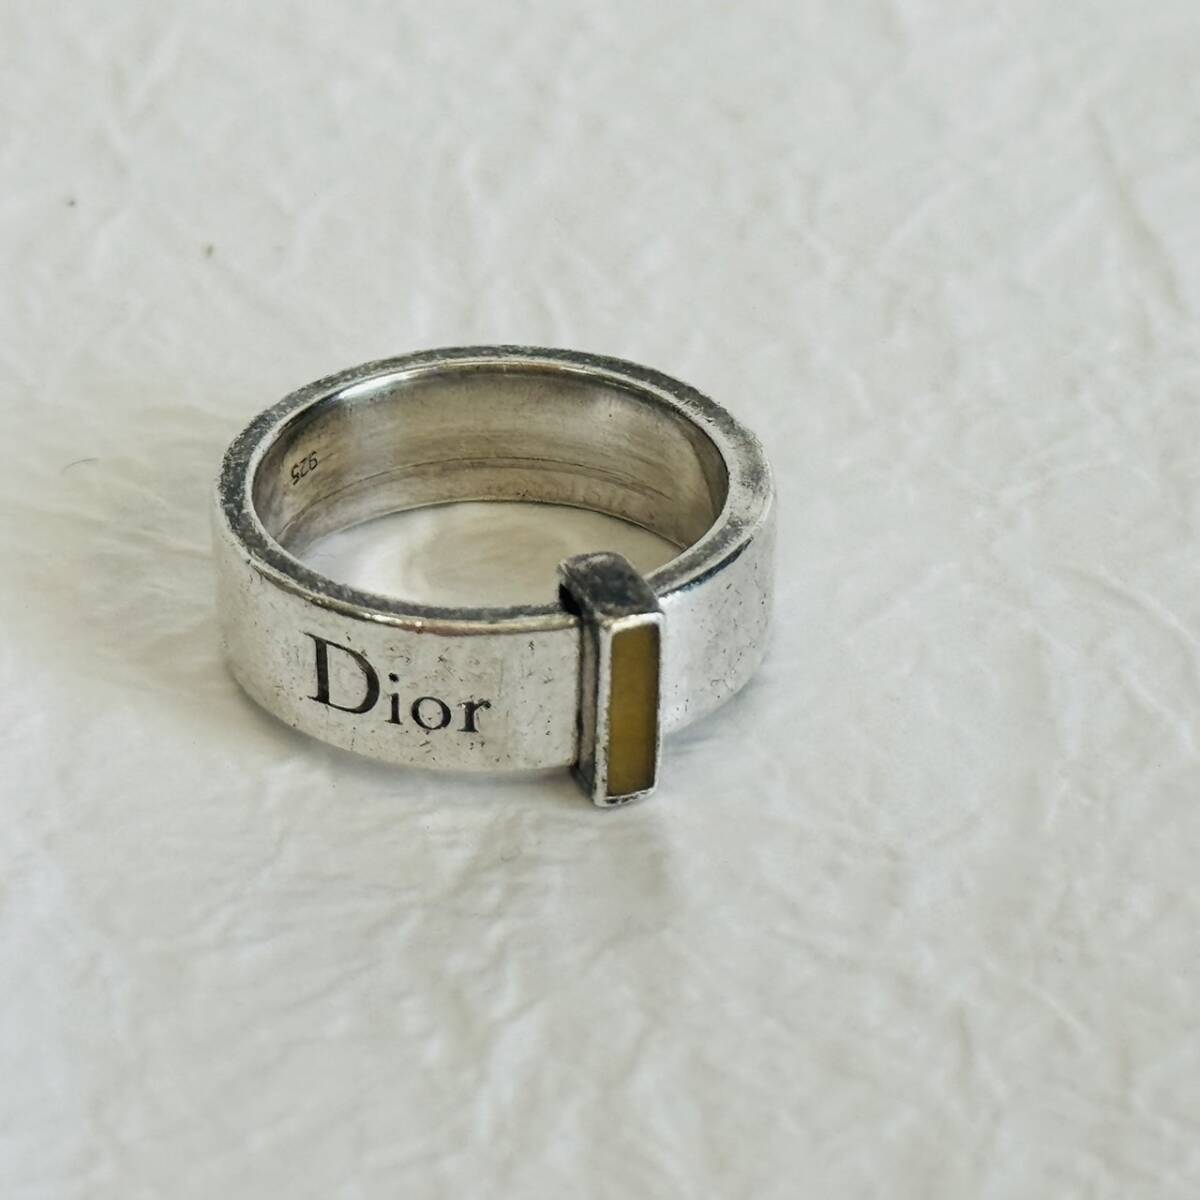 【2186】クリスチャンディオール SV925 リング 14号 指輪 銀 シルバー 7.3g Christian Dior アクセサリー ring accessory_画像1